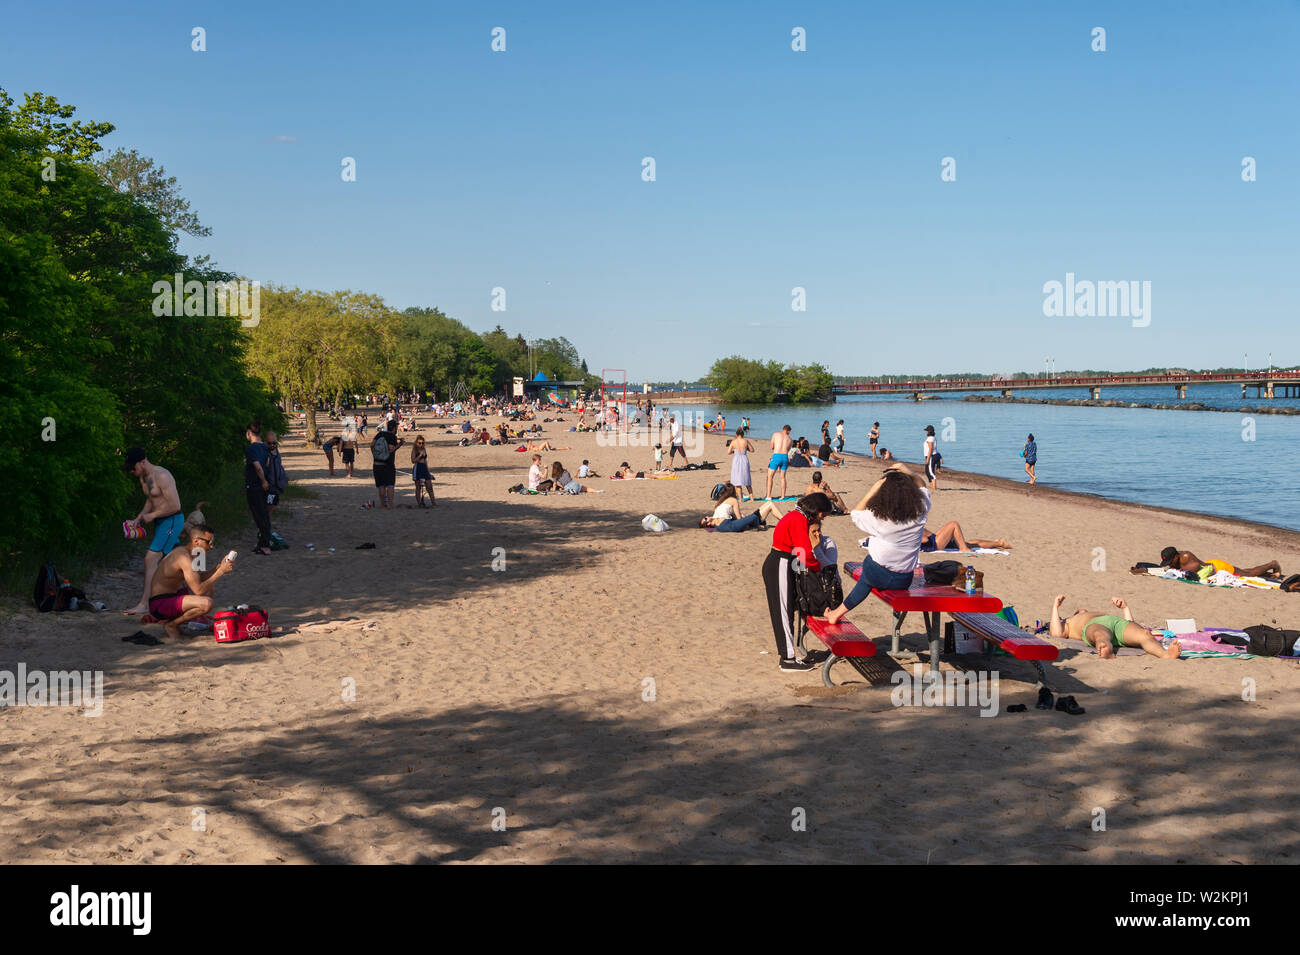 Toronto, CA - 23 de junio de 2019: la gente disfruta de un cálido día de verano en la playa en el centro de la isla. Foto de stock